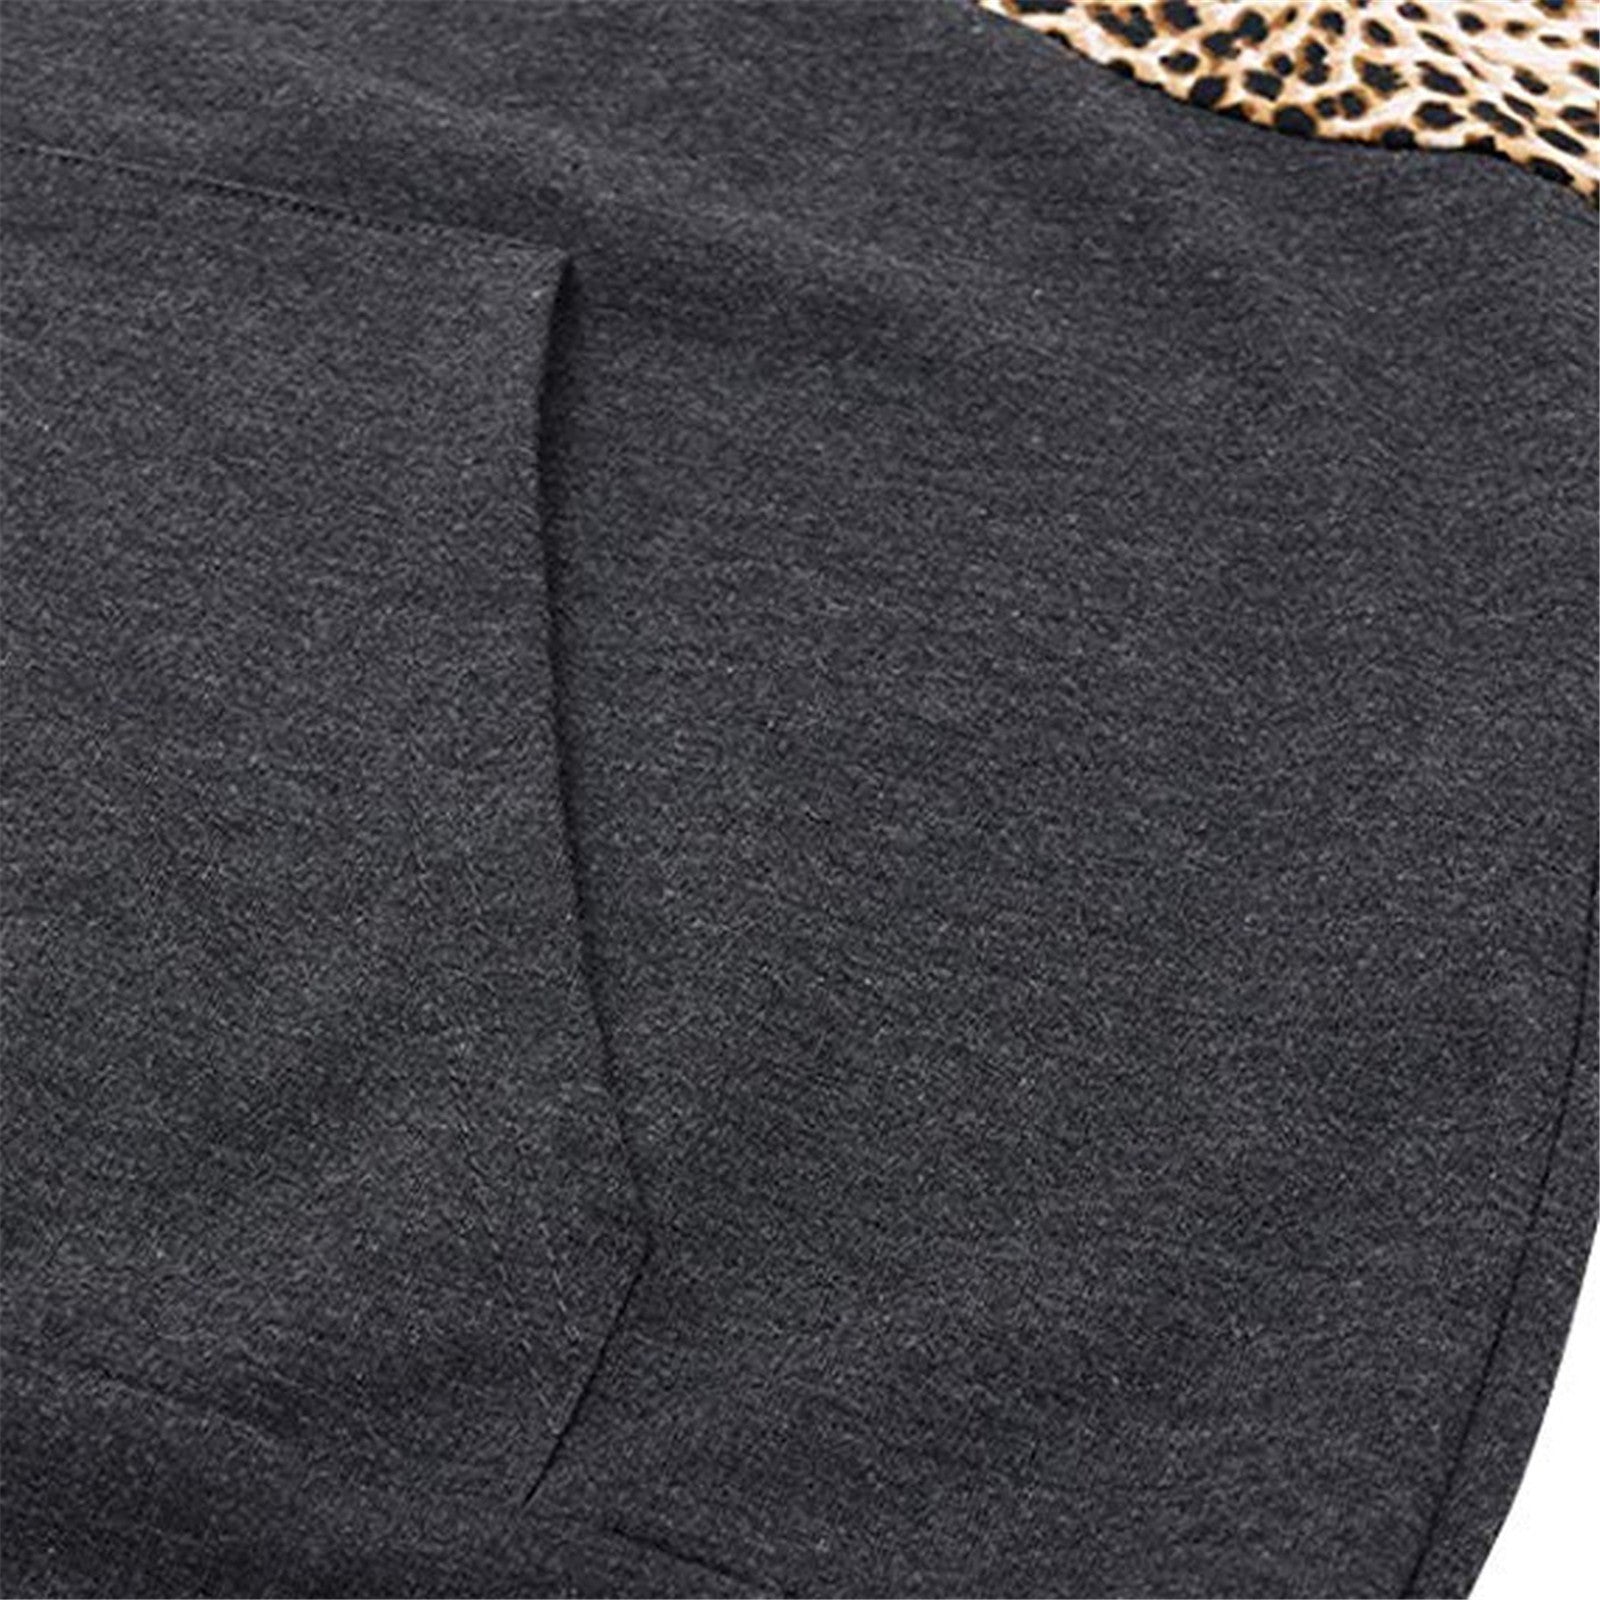 Leopard hooded printed sweatshirt